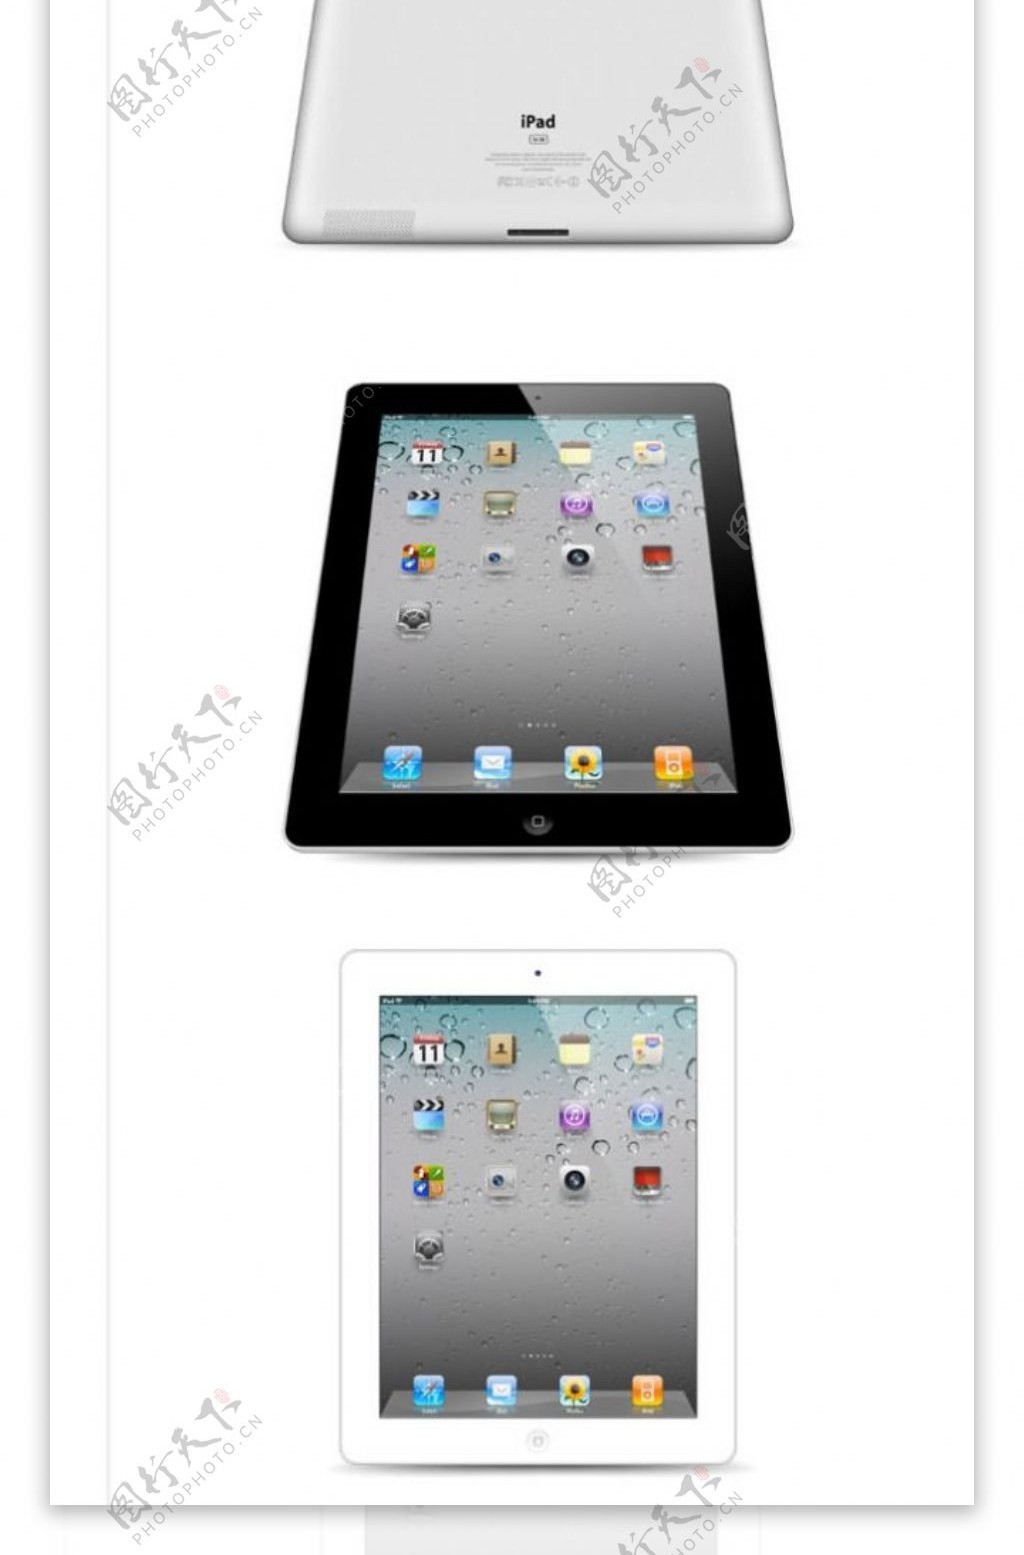 iPad2图标